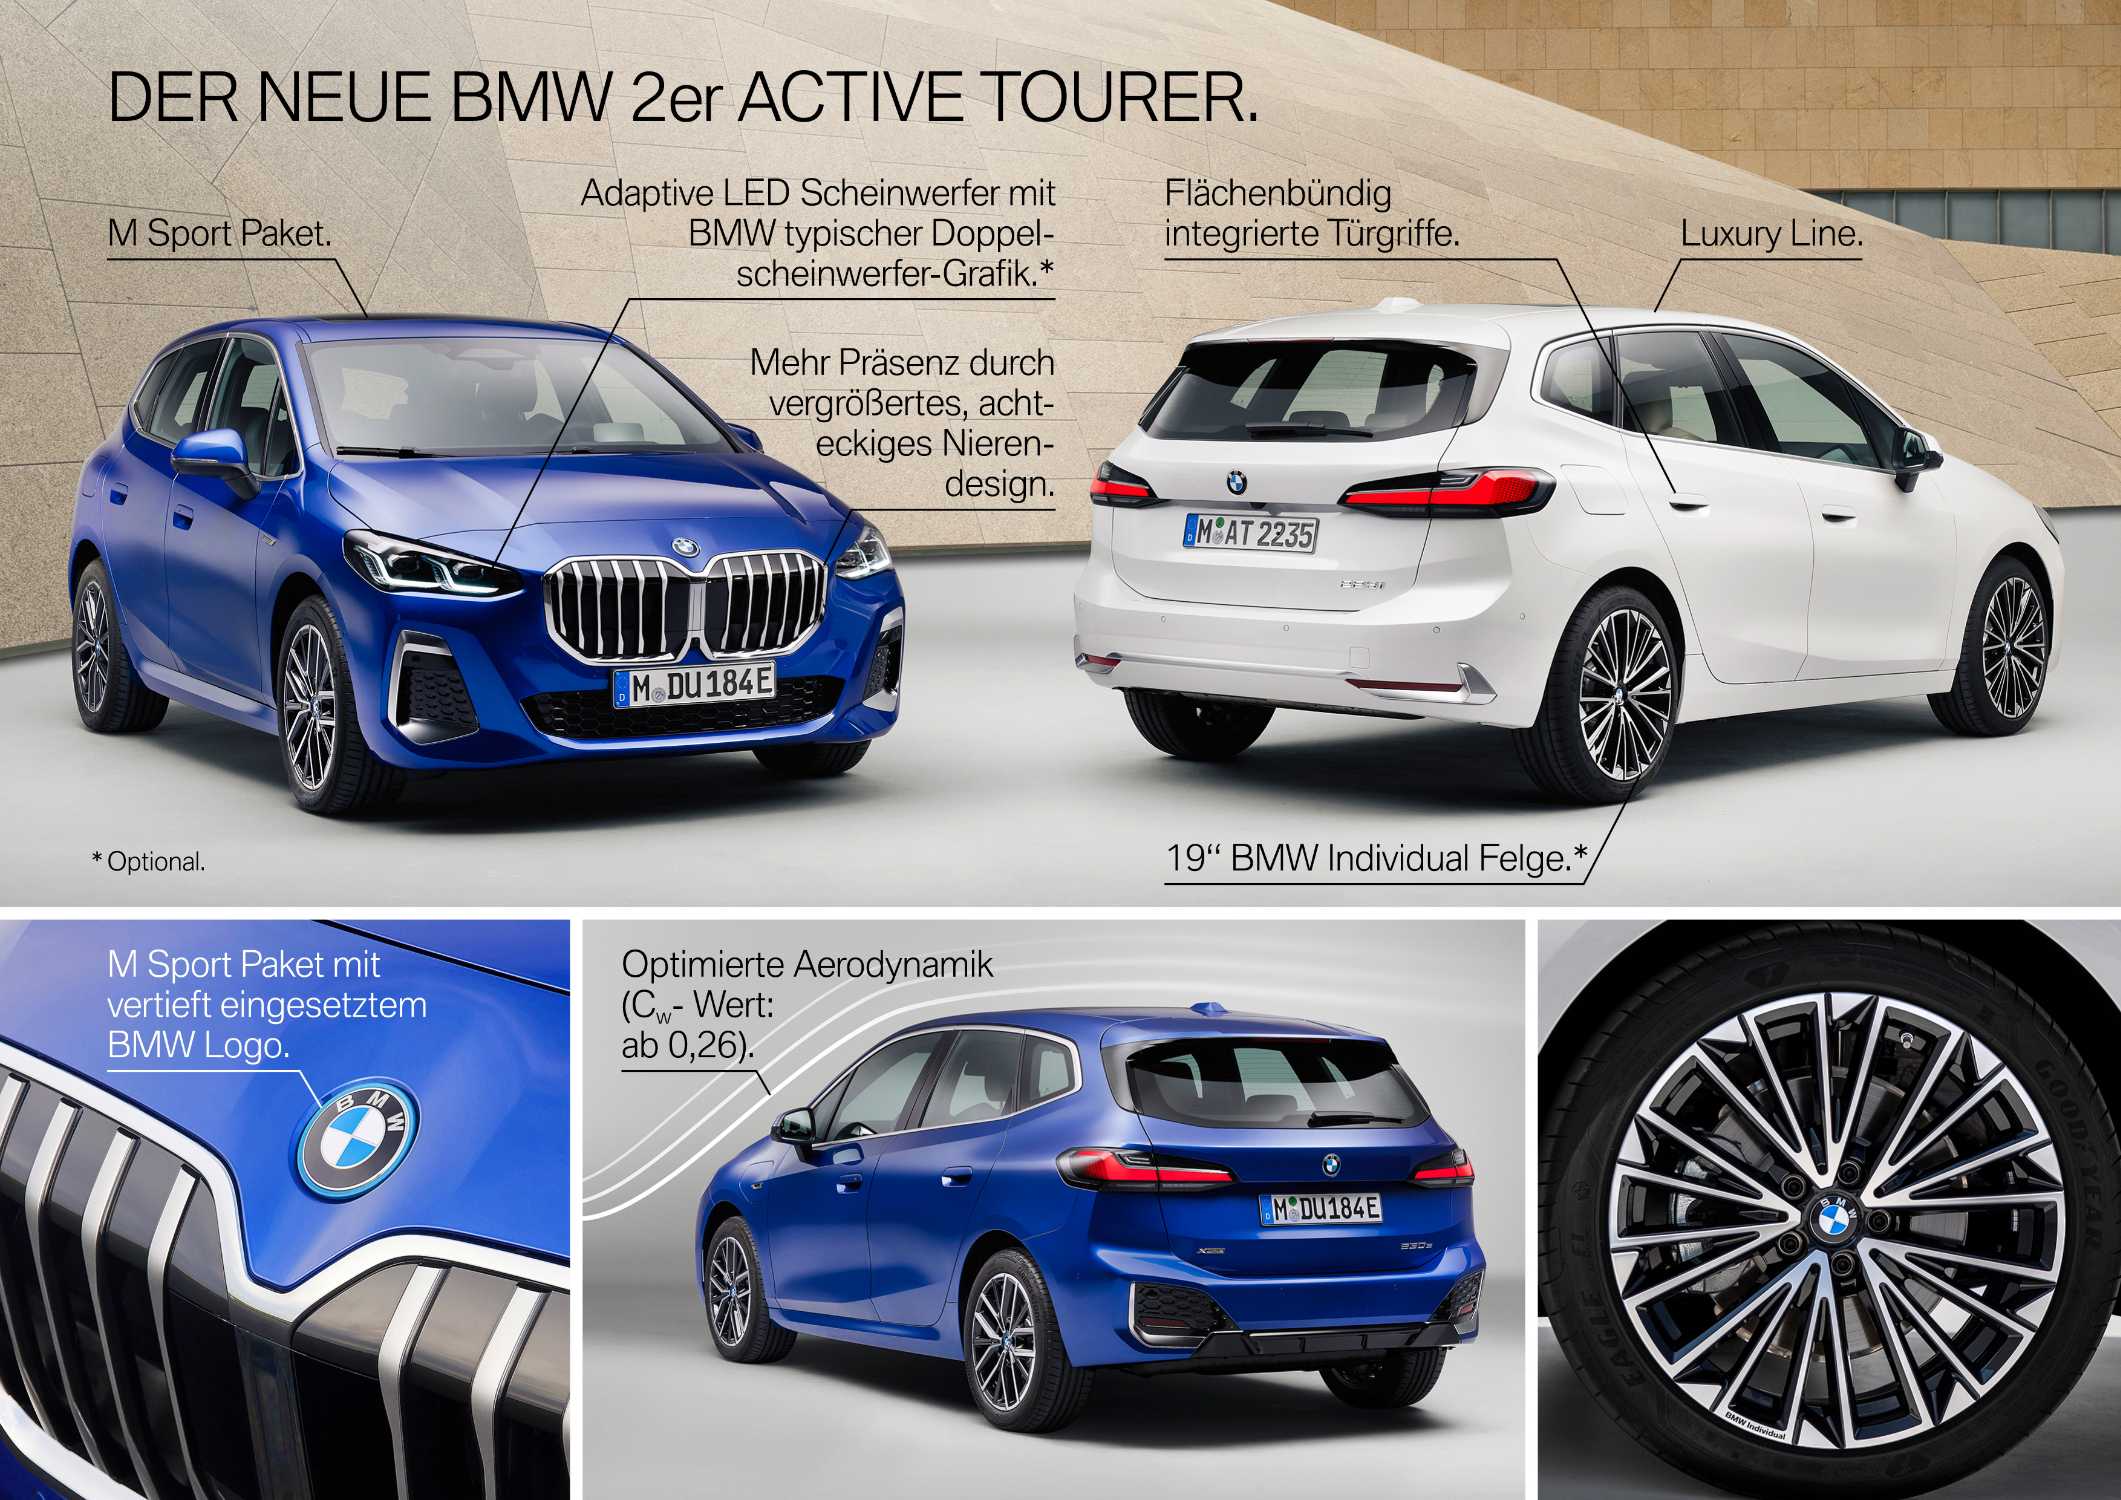 Der neue BMW Active Tourer - Highlights (10/2021).